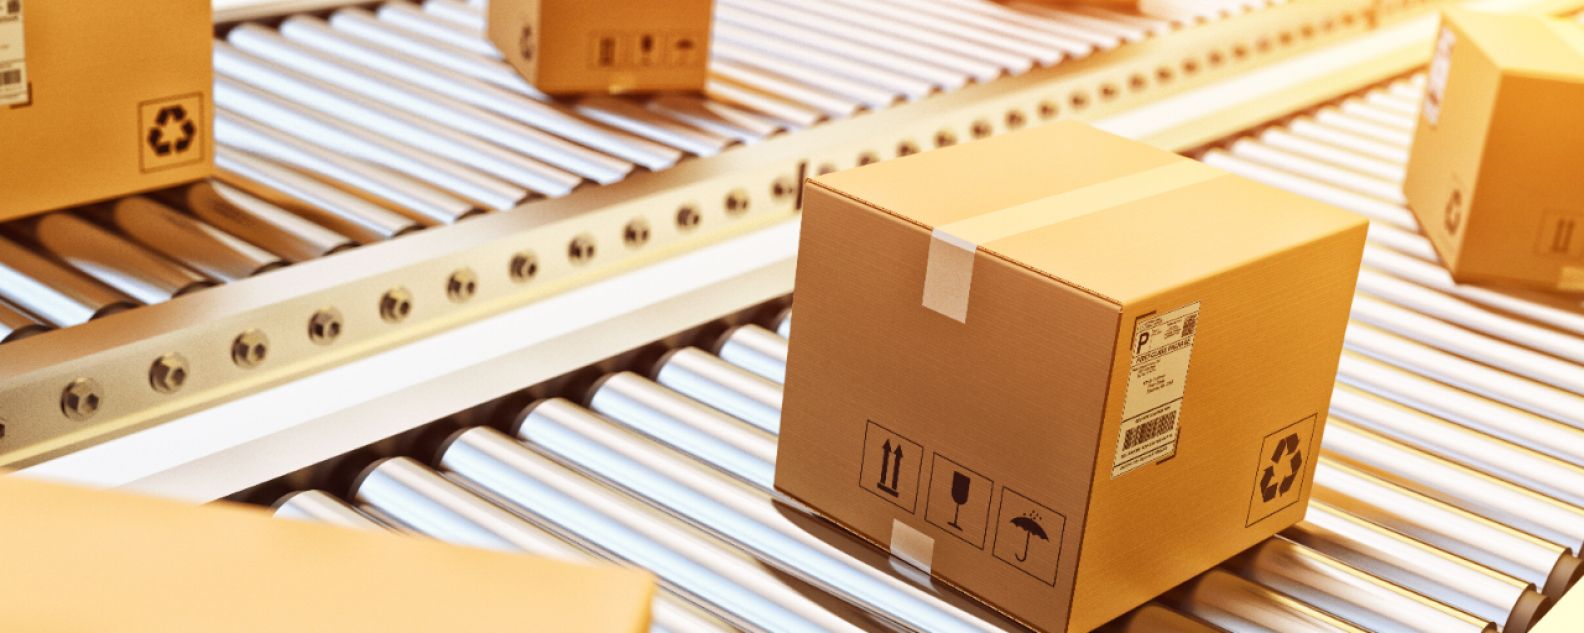 Cajas de cartón sobre una cinta transportadora en una línea de embalaje de un almacén de distribución